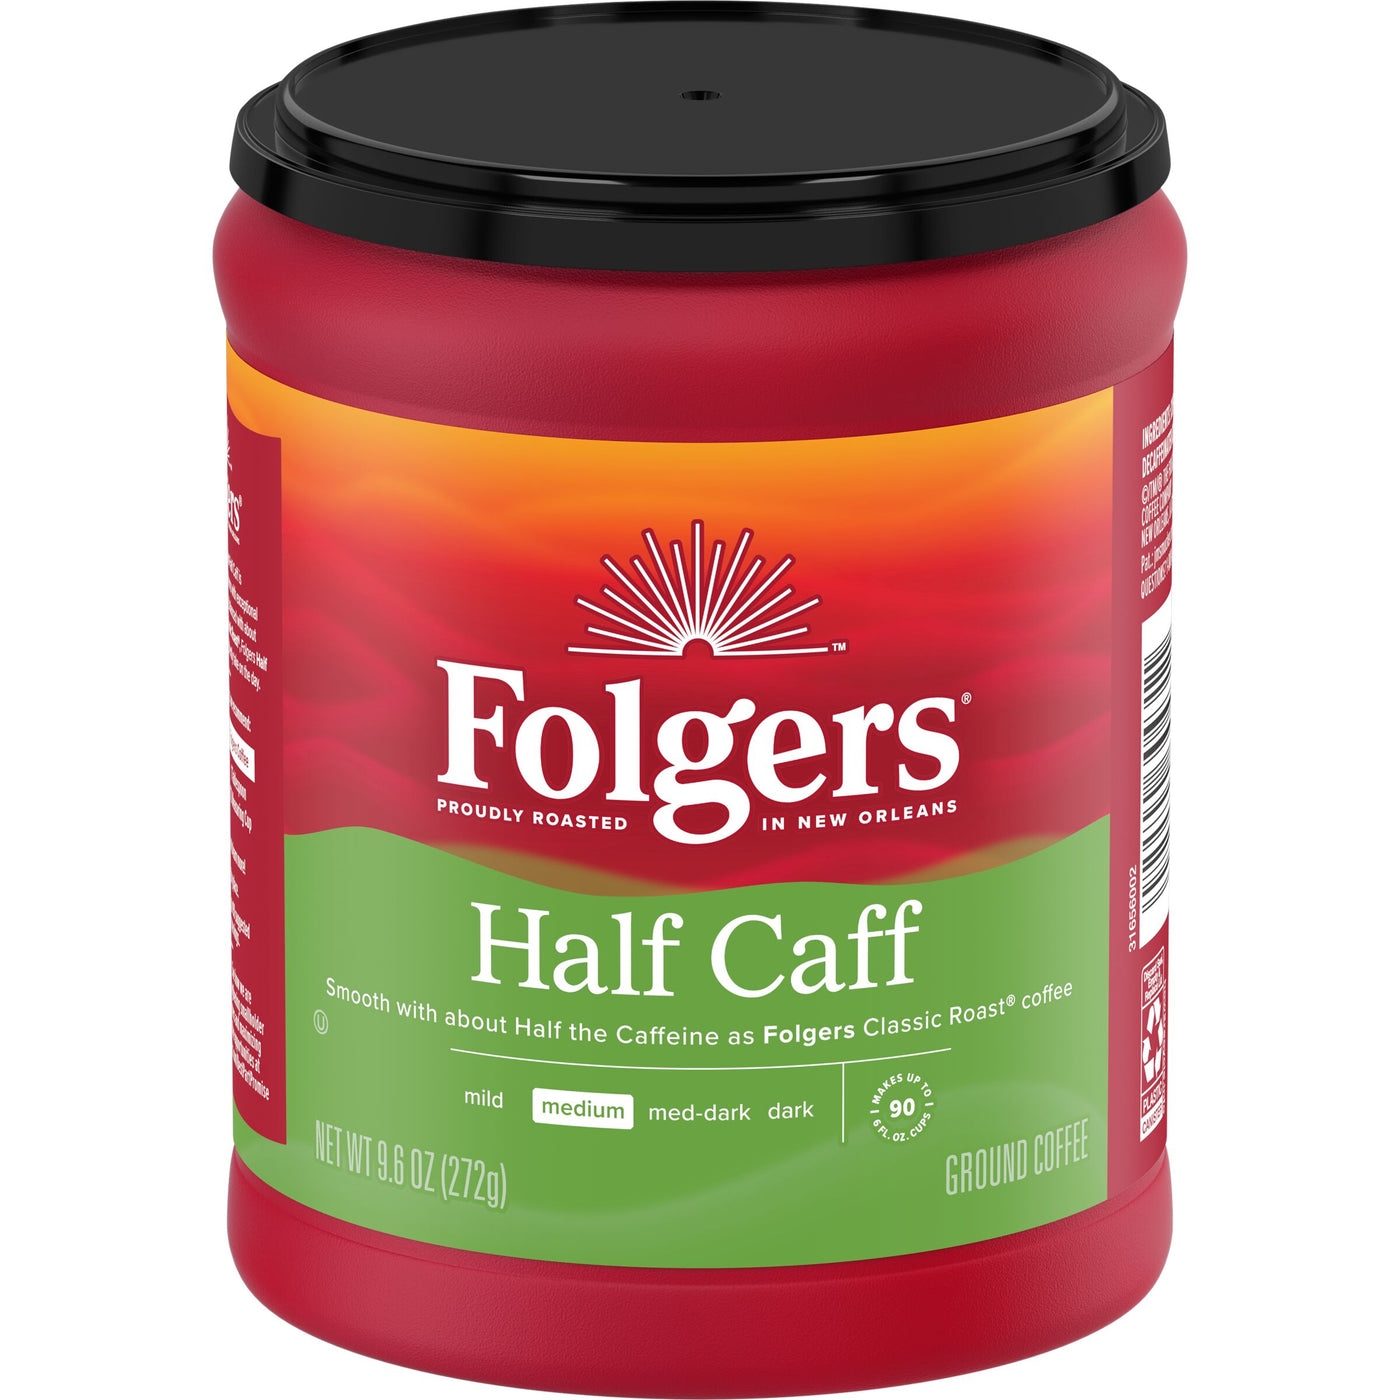 Folgers Half Caff, Medium Roast, Ground Coffee